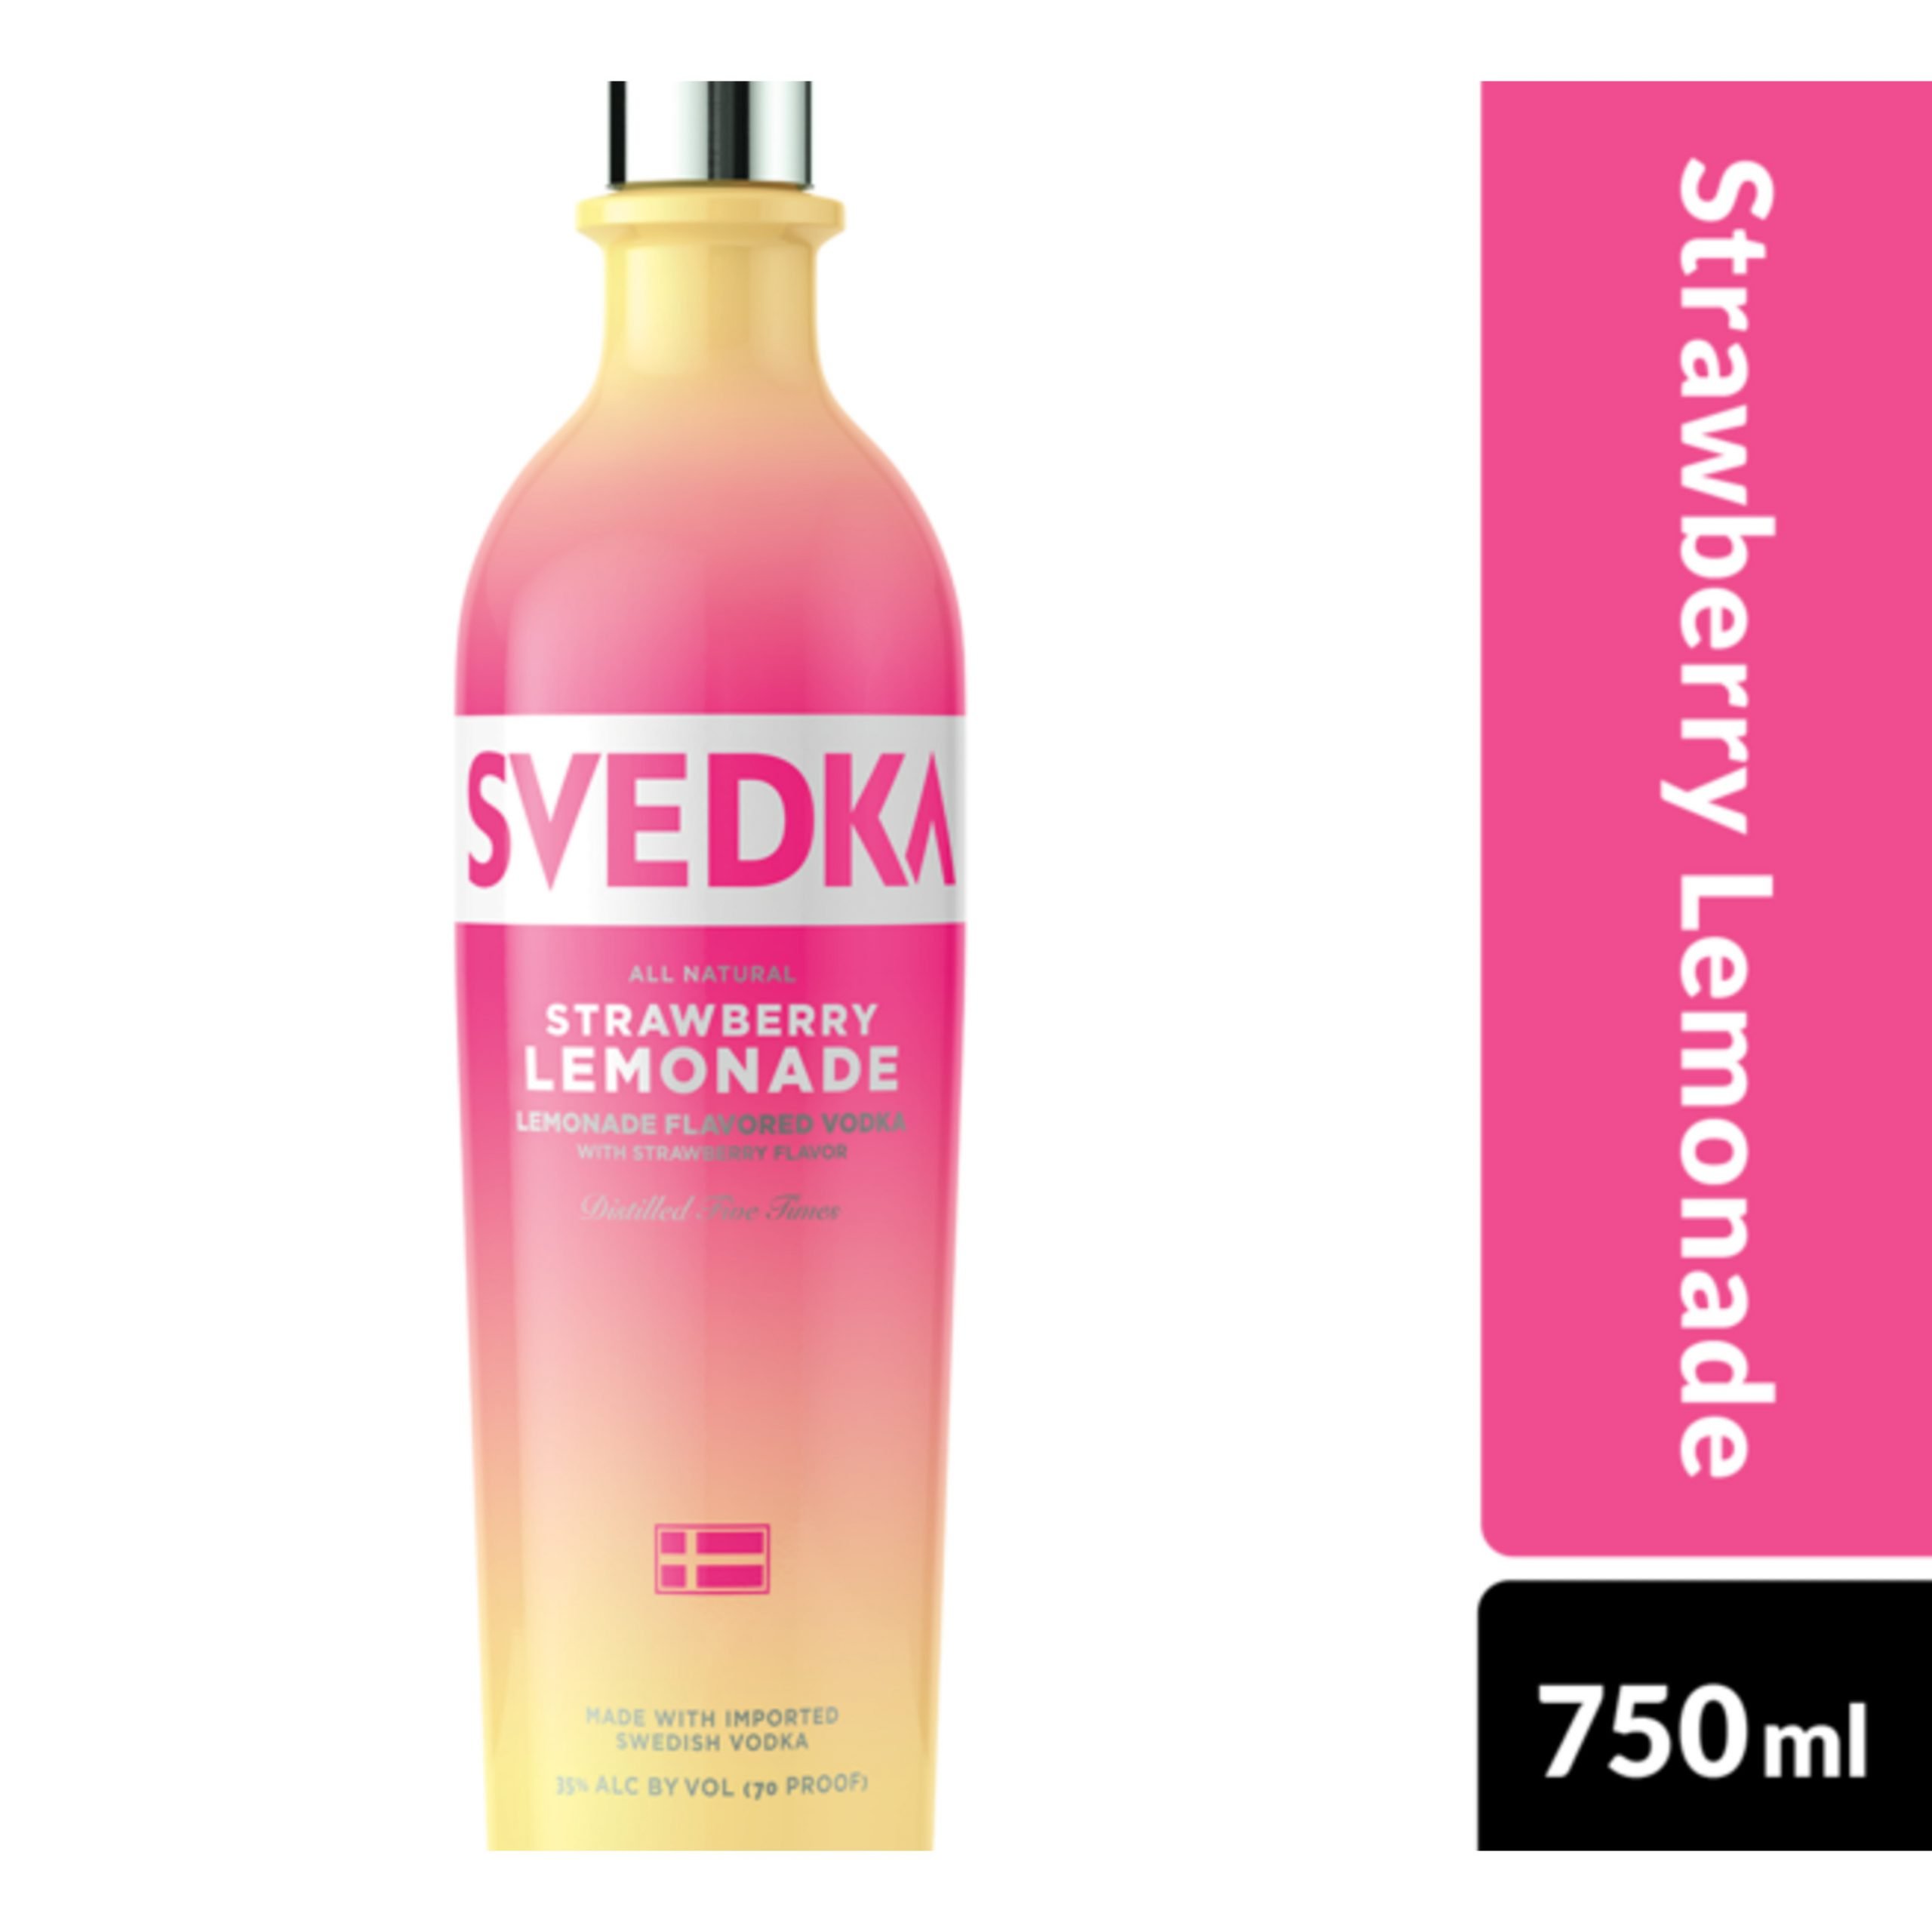 SVEDKA Strawberry Lemonade Flavored Vodka, 750 mL Bottle, 70 Proof ...